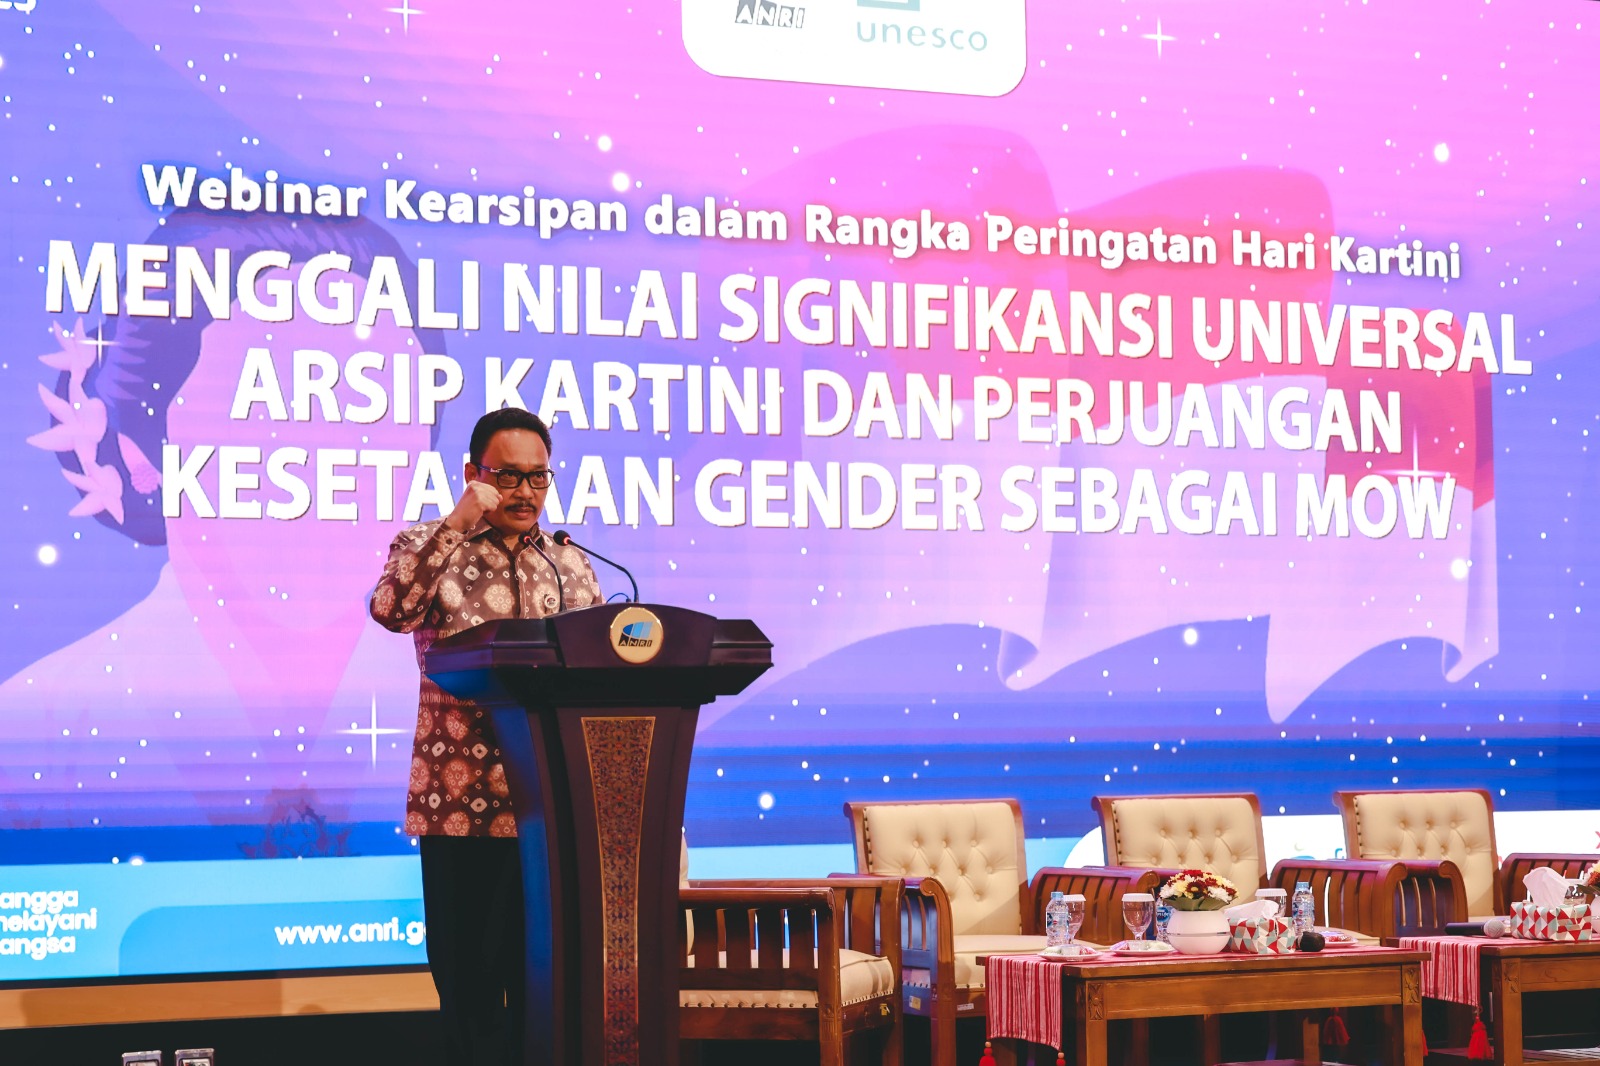 Menggali Nilai Signifikansi Universal Arsip Kartini dan Perjuangan Kesetaraan Gender sebagai MOW